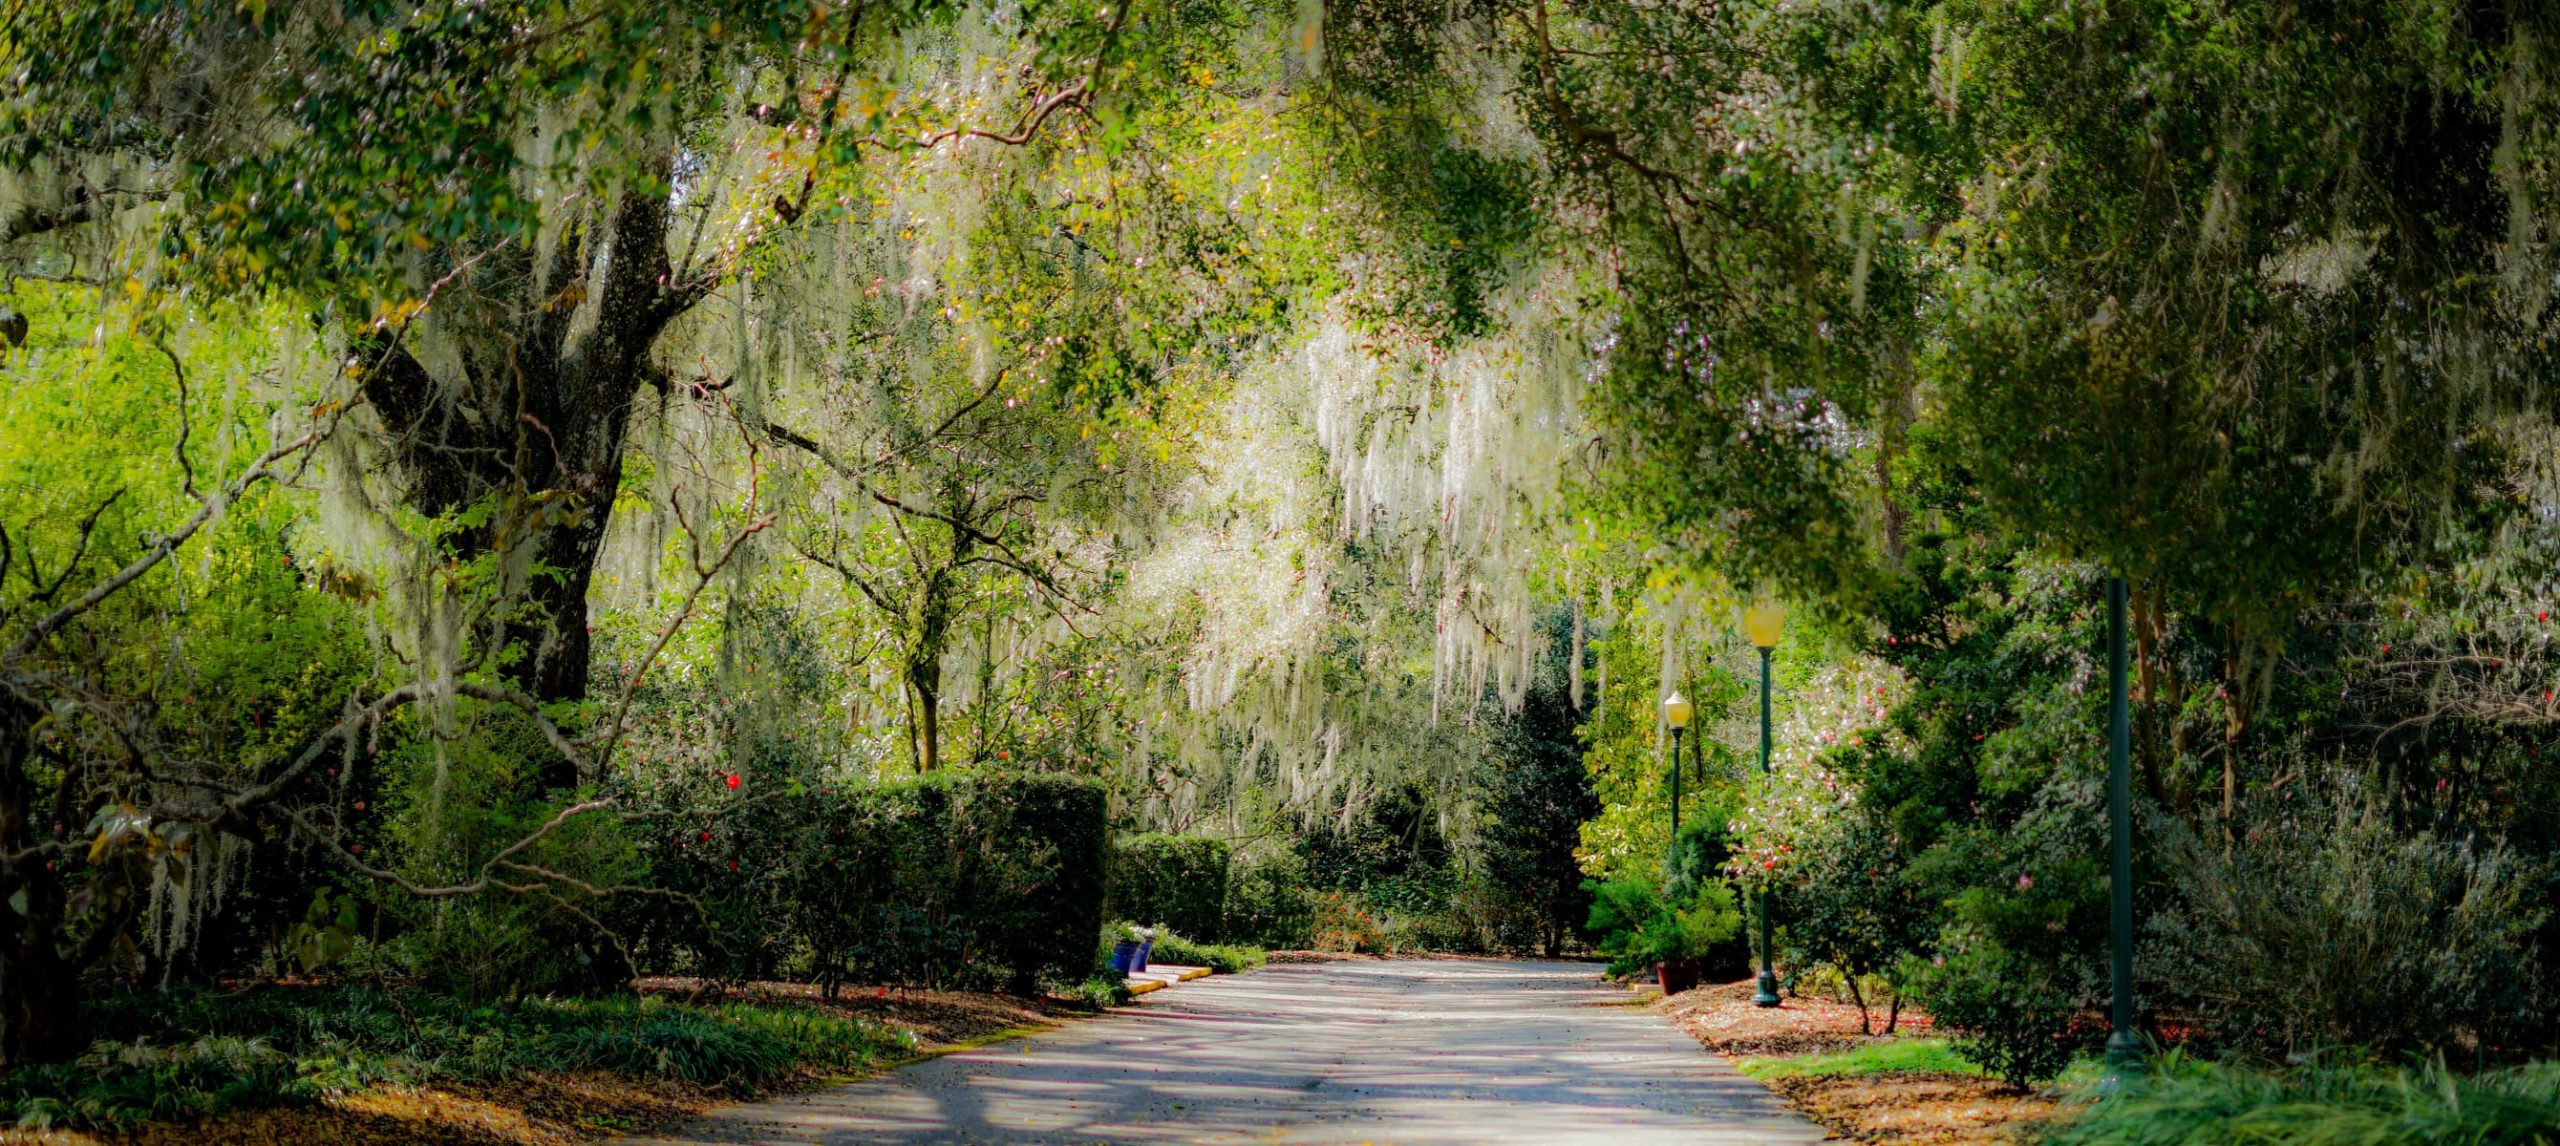 A pathway through a canopy of trees at Leu Gardens in Orlando Florida